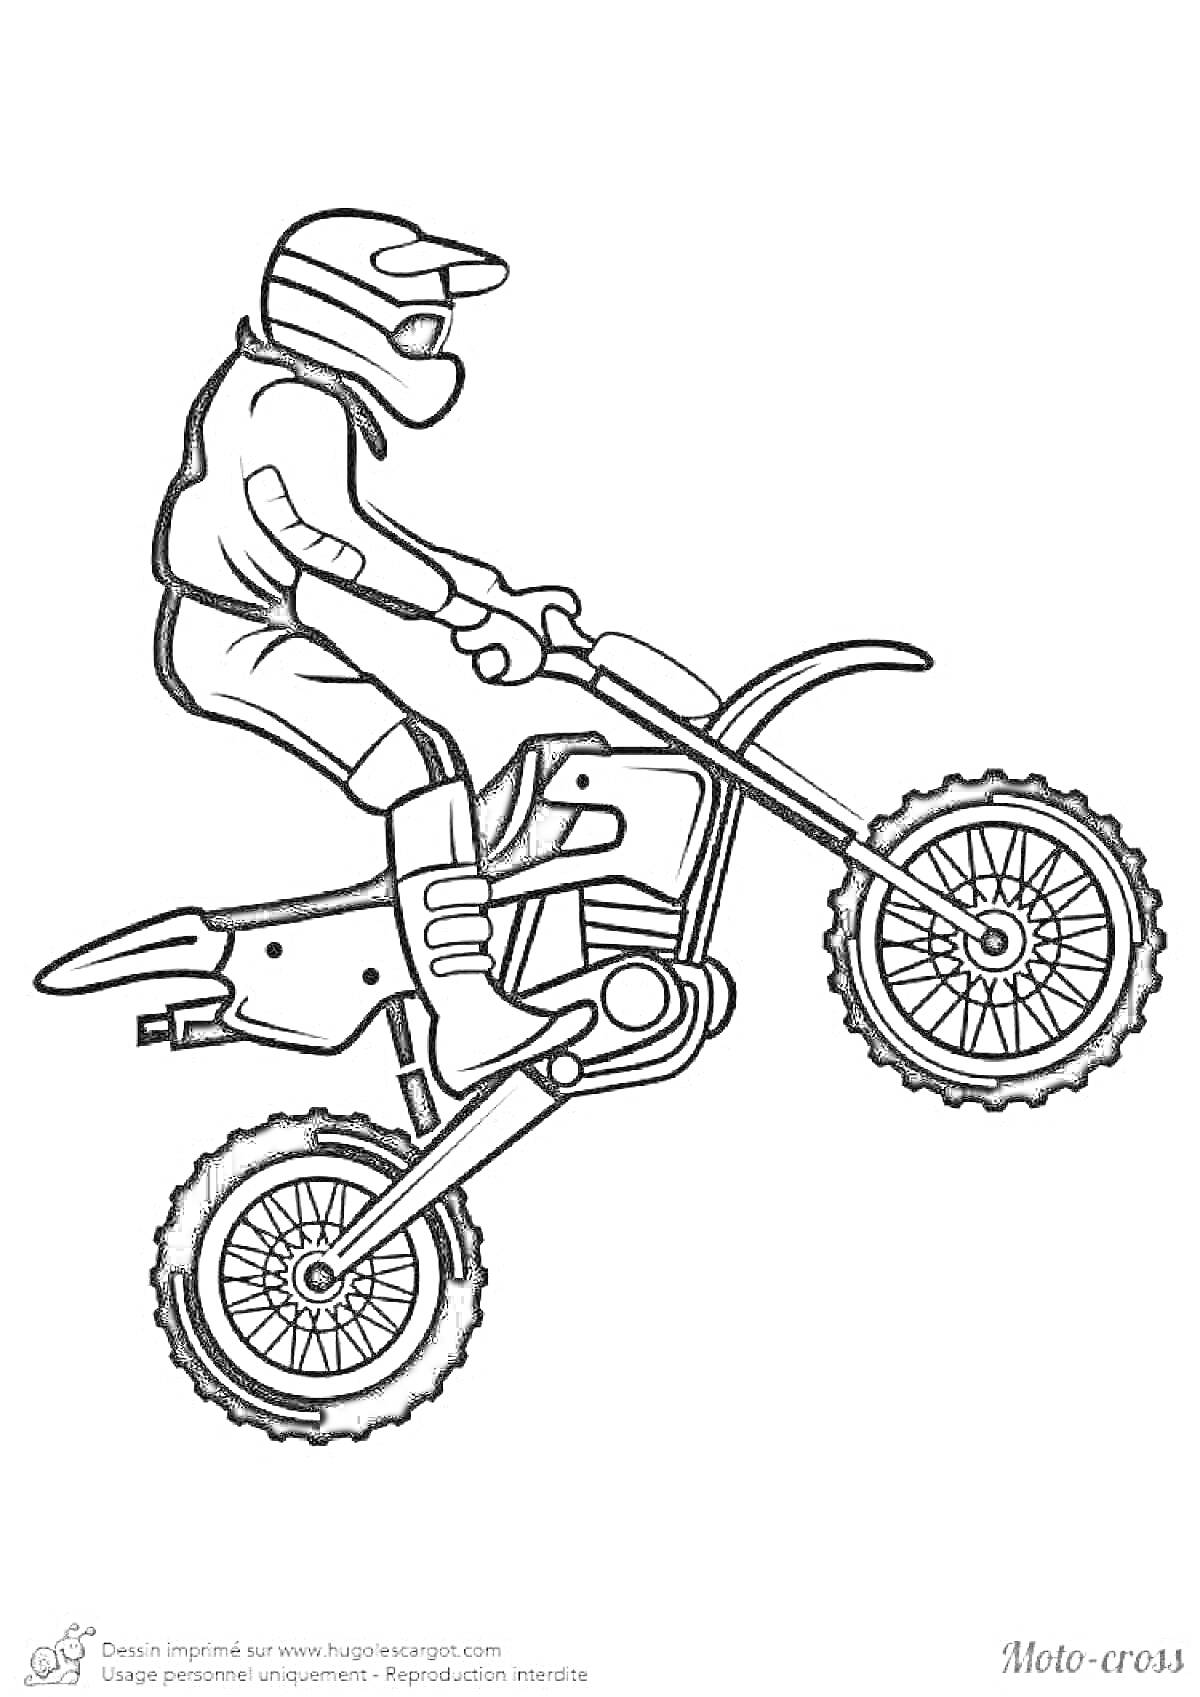 Раскраска Мотокросс-гонщик на мотоцикле в прыжке